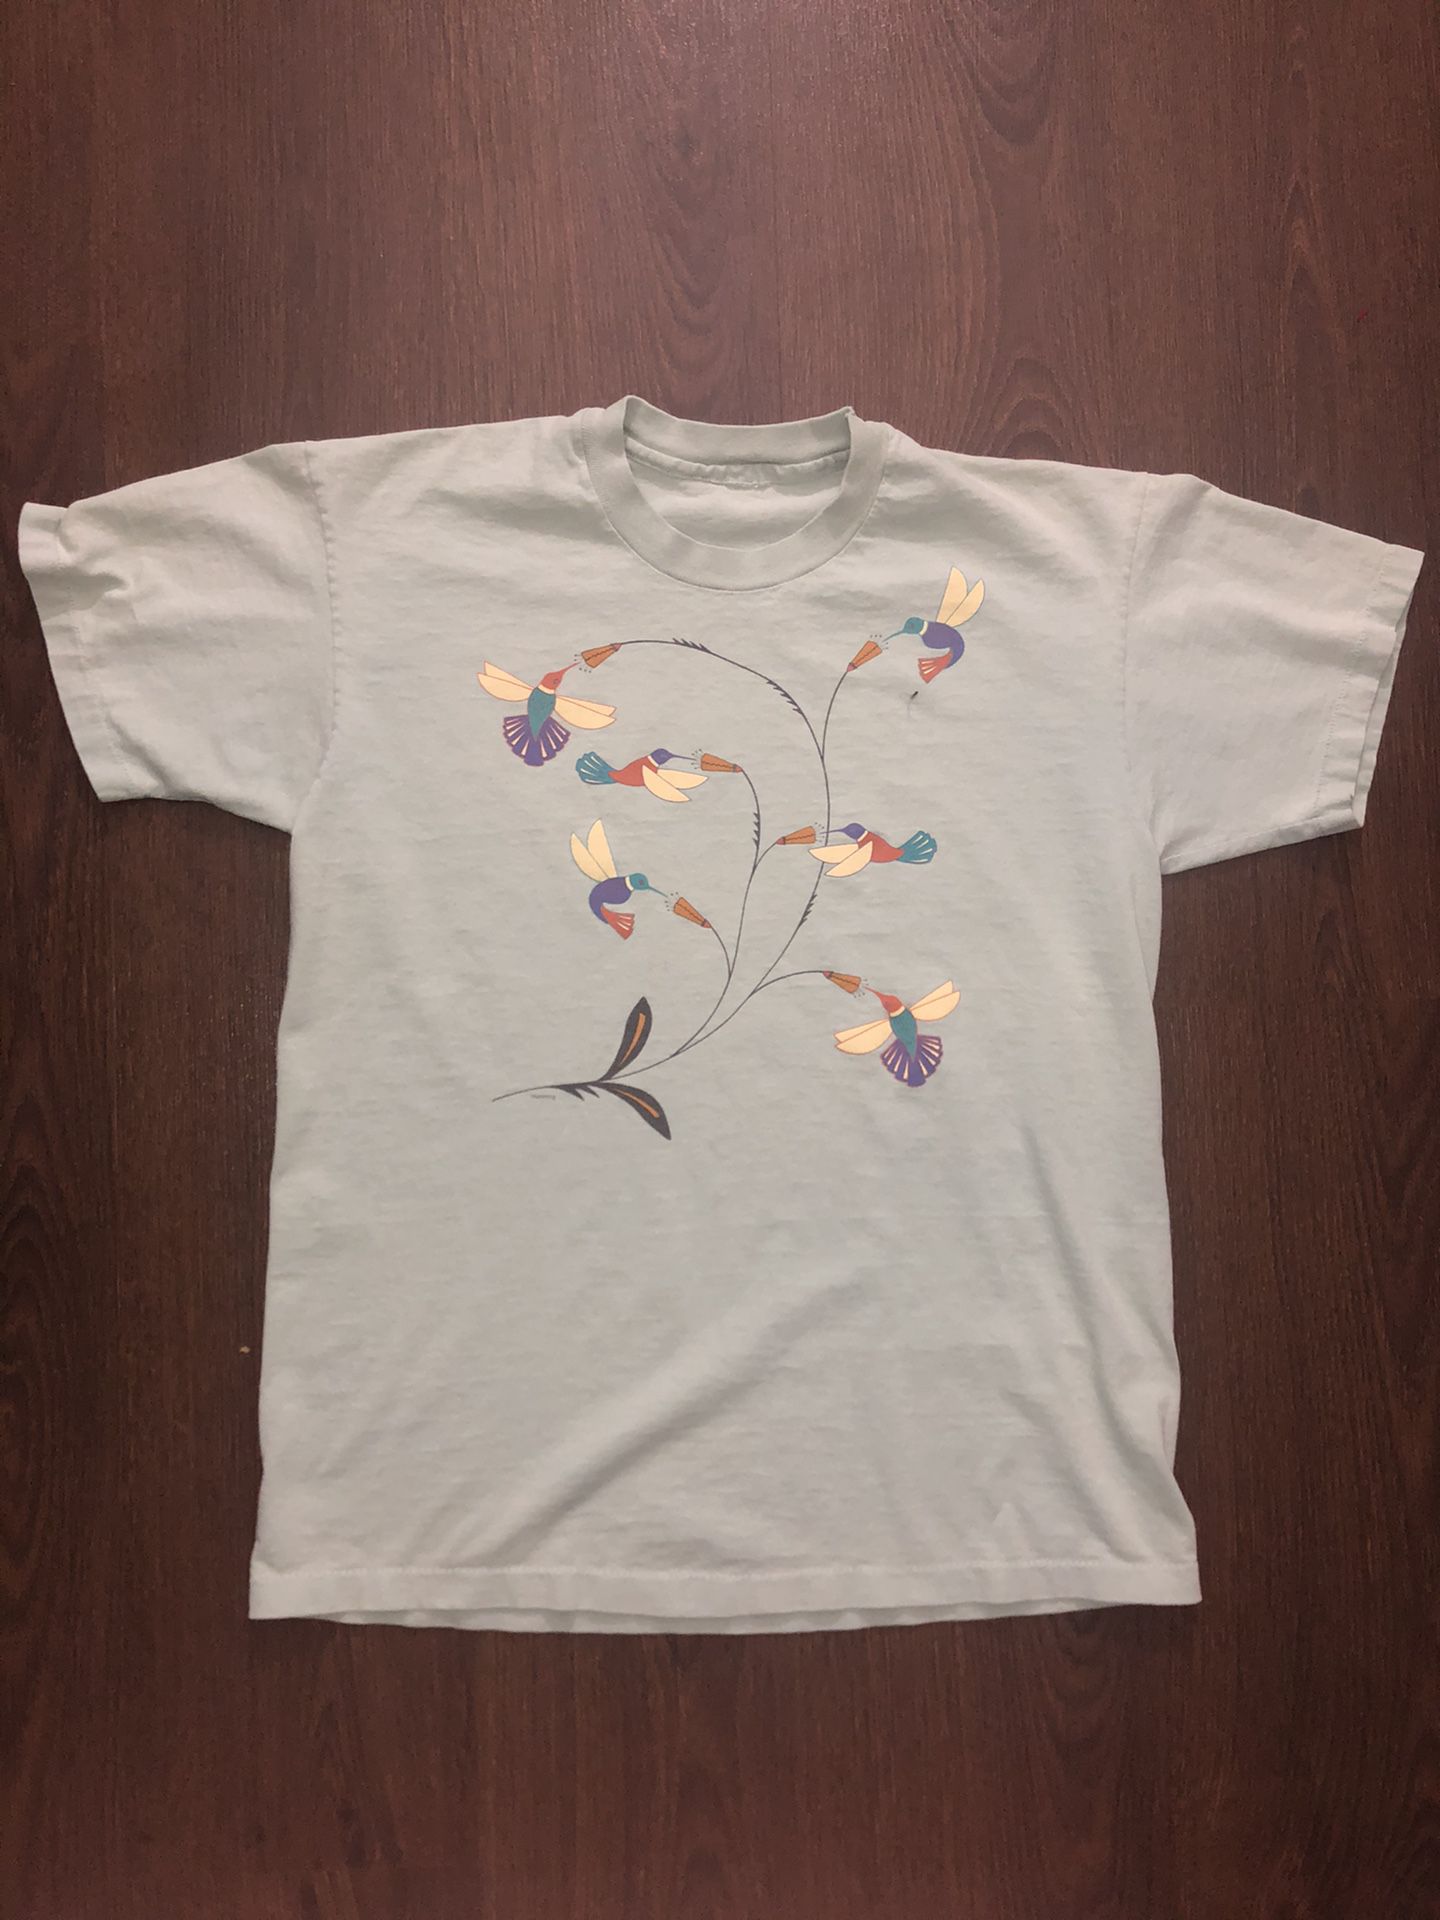 Vintage Hummingbird T Shirt Adult Medium